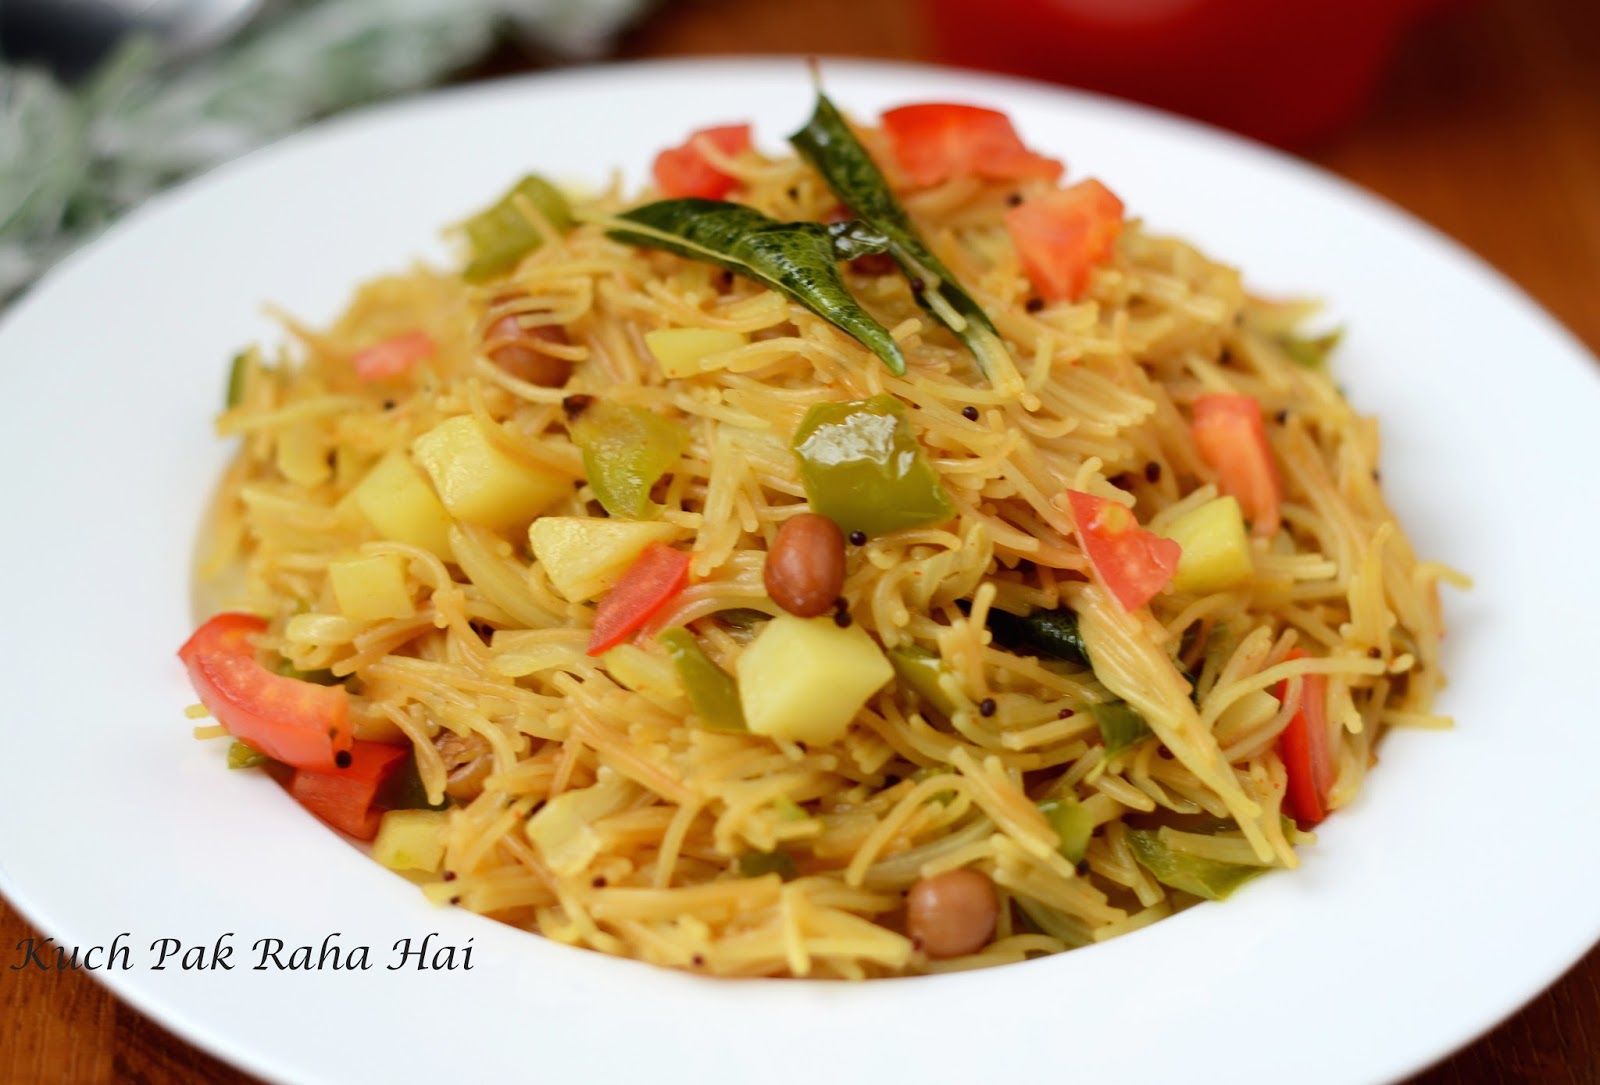 Kuch Pak Raha Hai: Vegetable Vermicelli